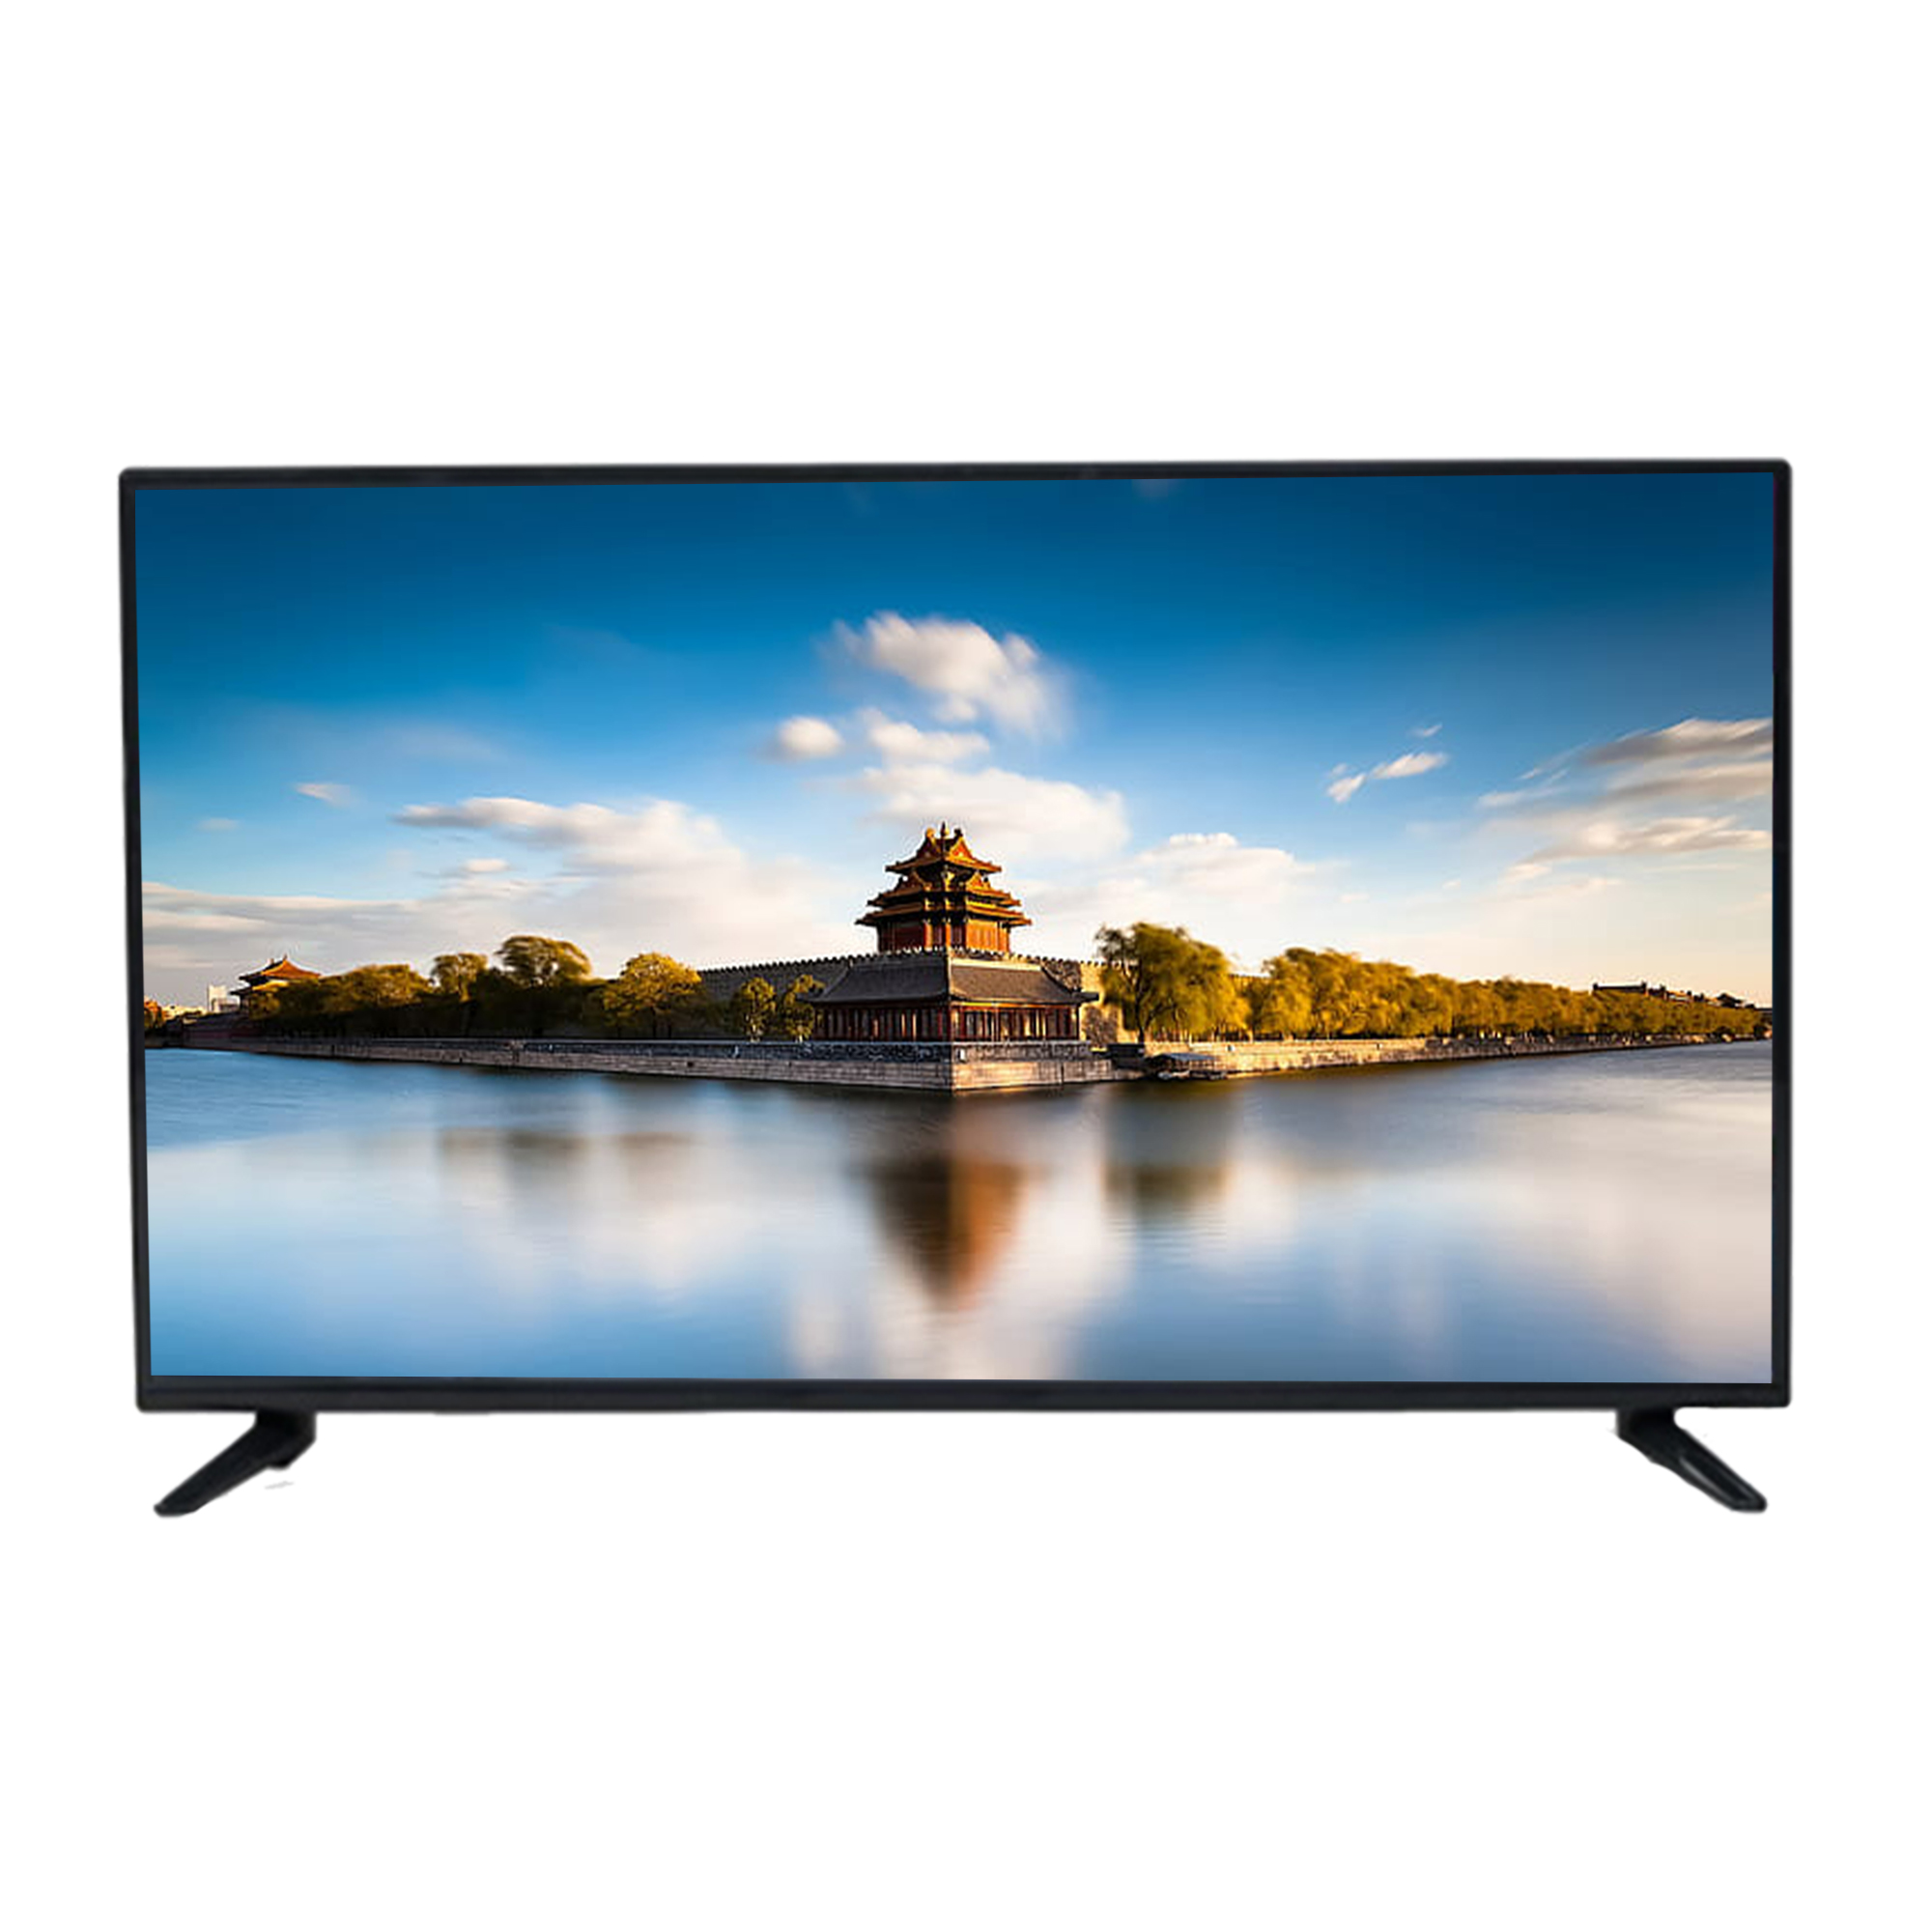 Buy Sensei 32 Inch Smart LED TV : S32SLED23 Online in Nepal